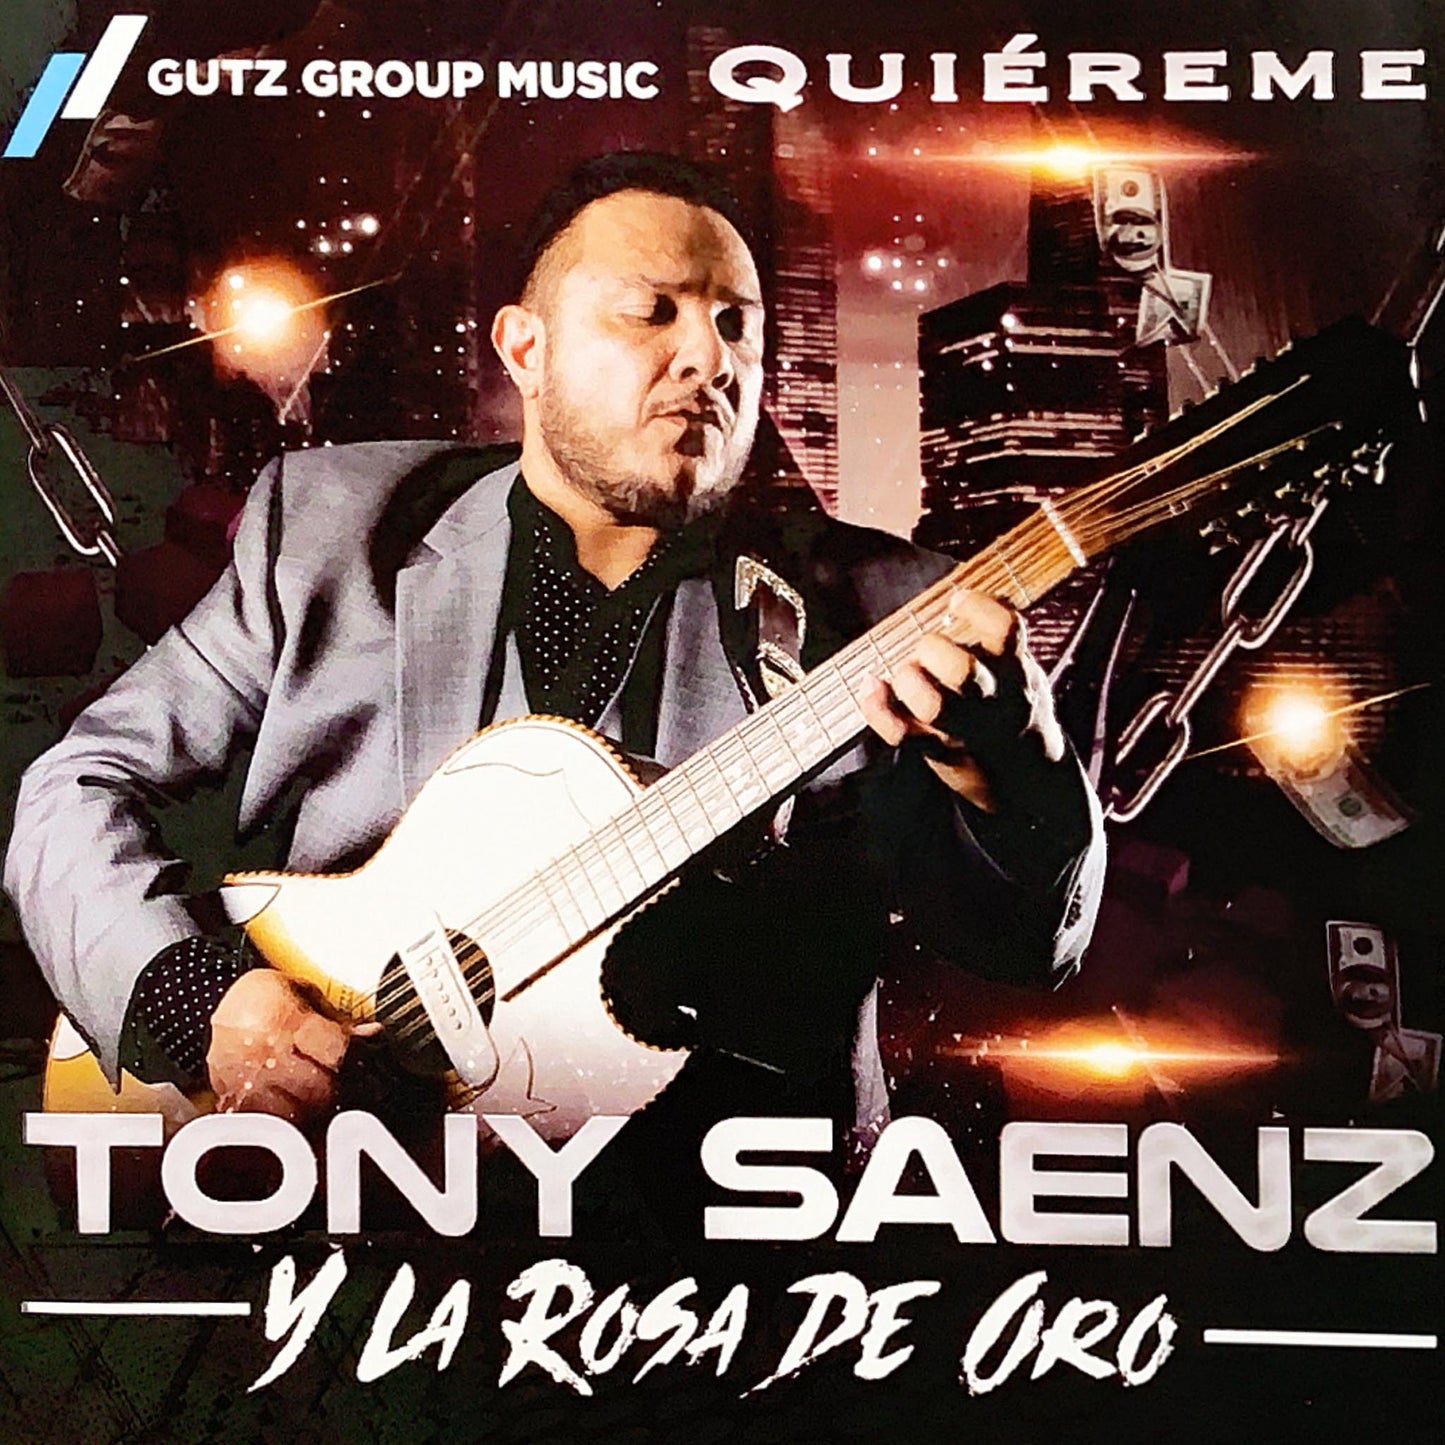 Tony Saenz (Tony Tigre) - Quiereme (CD)